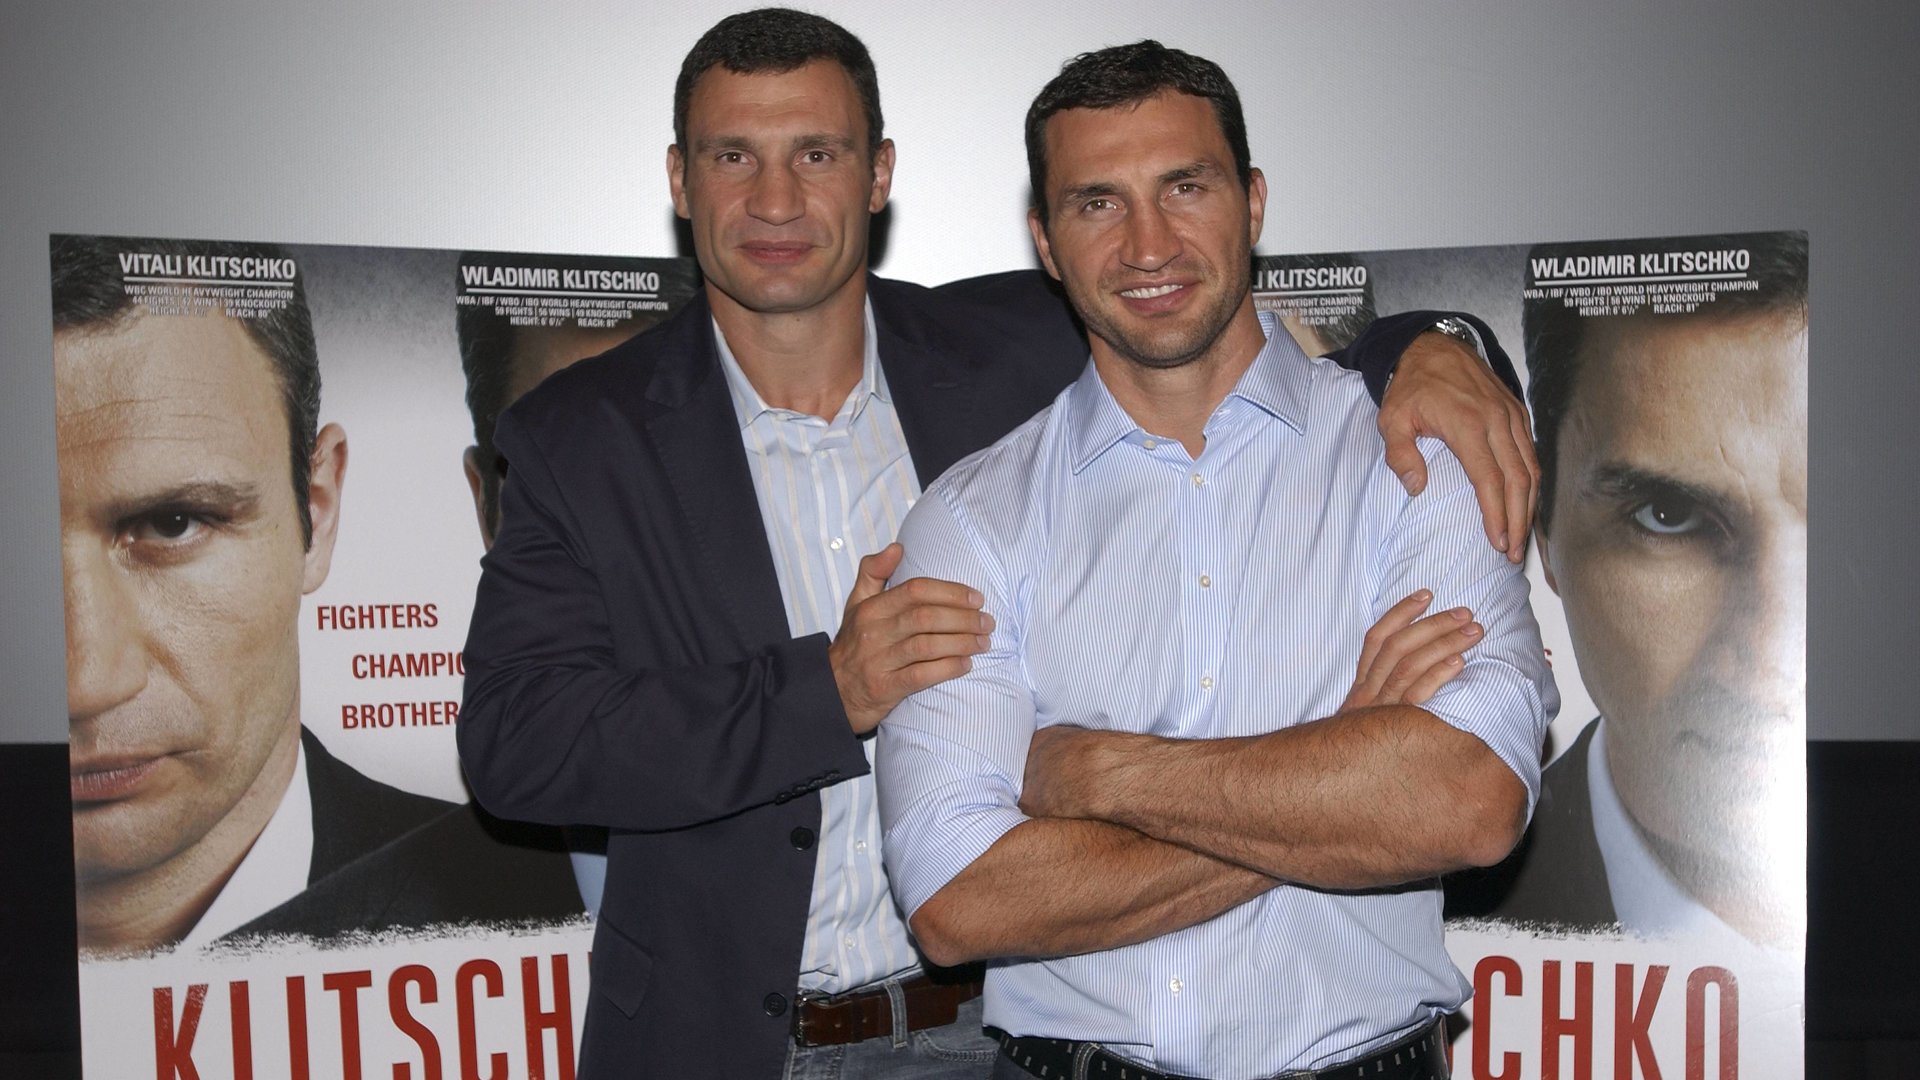 #Ins Kino gehen und damit der Ukraine helfen: Der „Klitschko“-Film macht es möglich